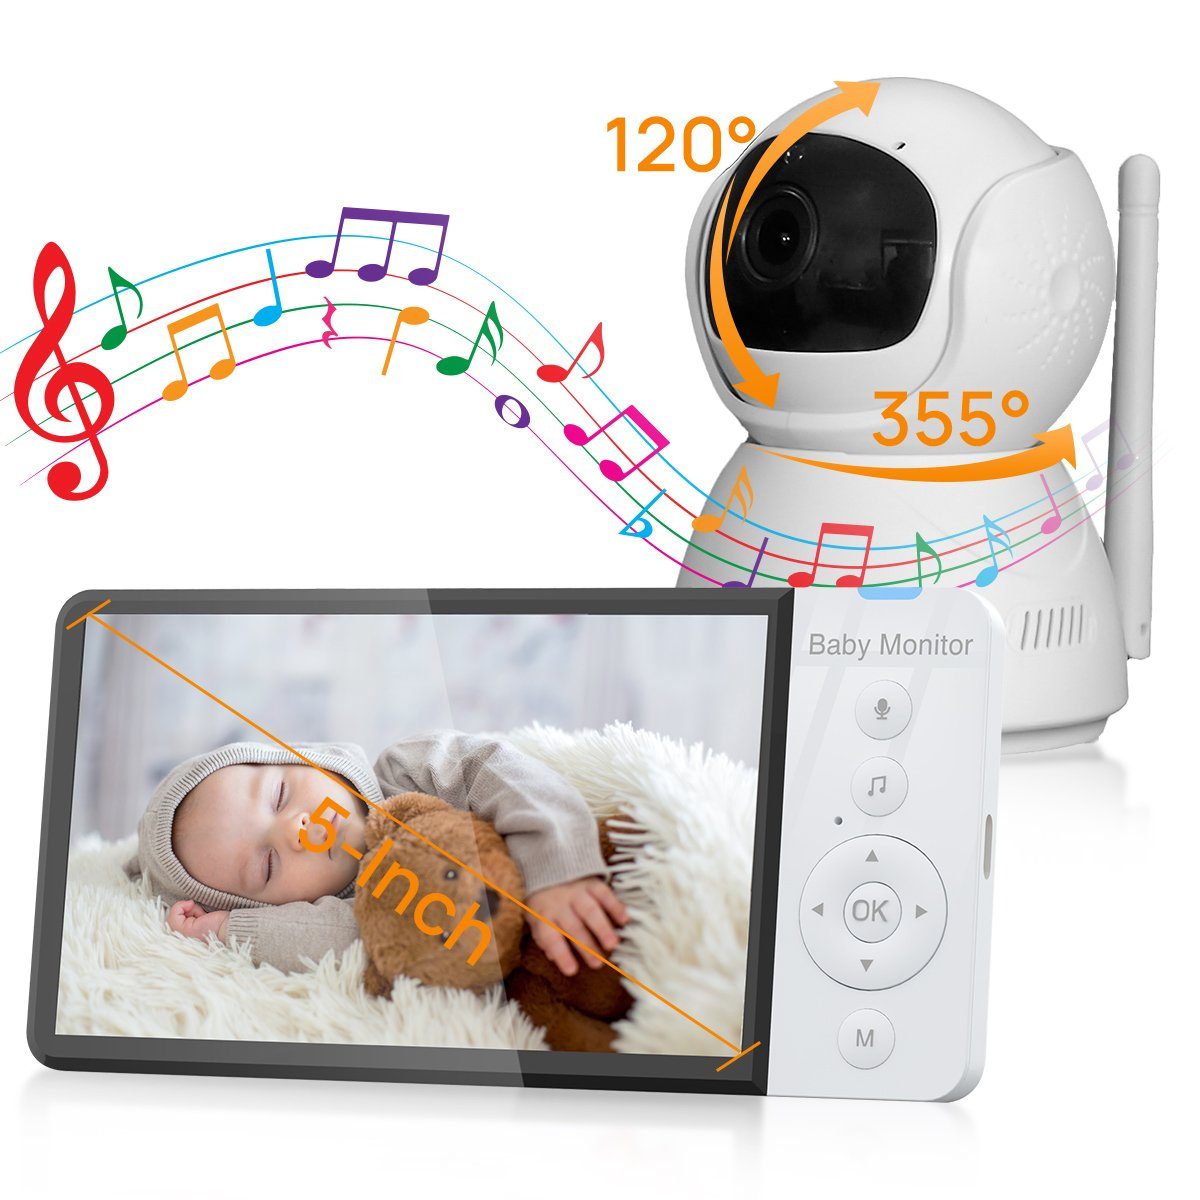 VSIUO Video-Babyphone Video Babyphone mit Kamera, 5.0" Digital LCD Bildschirm, 5000 mAh, Babymonitor mit VOX modus, Nachtsicht, Temperatursensor, Schlaflieder, Zwei-Wege-Audio, Gegensprechfunktion, 720P IPS-Bildschirm, 2.4GHZ FHSS-Verschlüsselungstechnologie